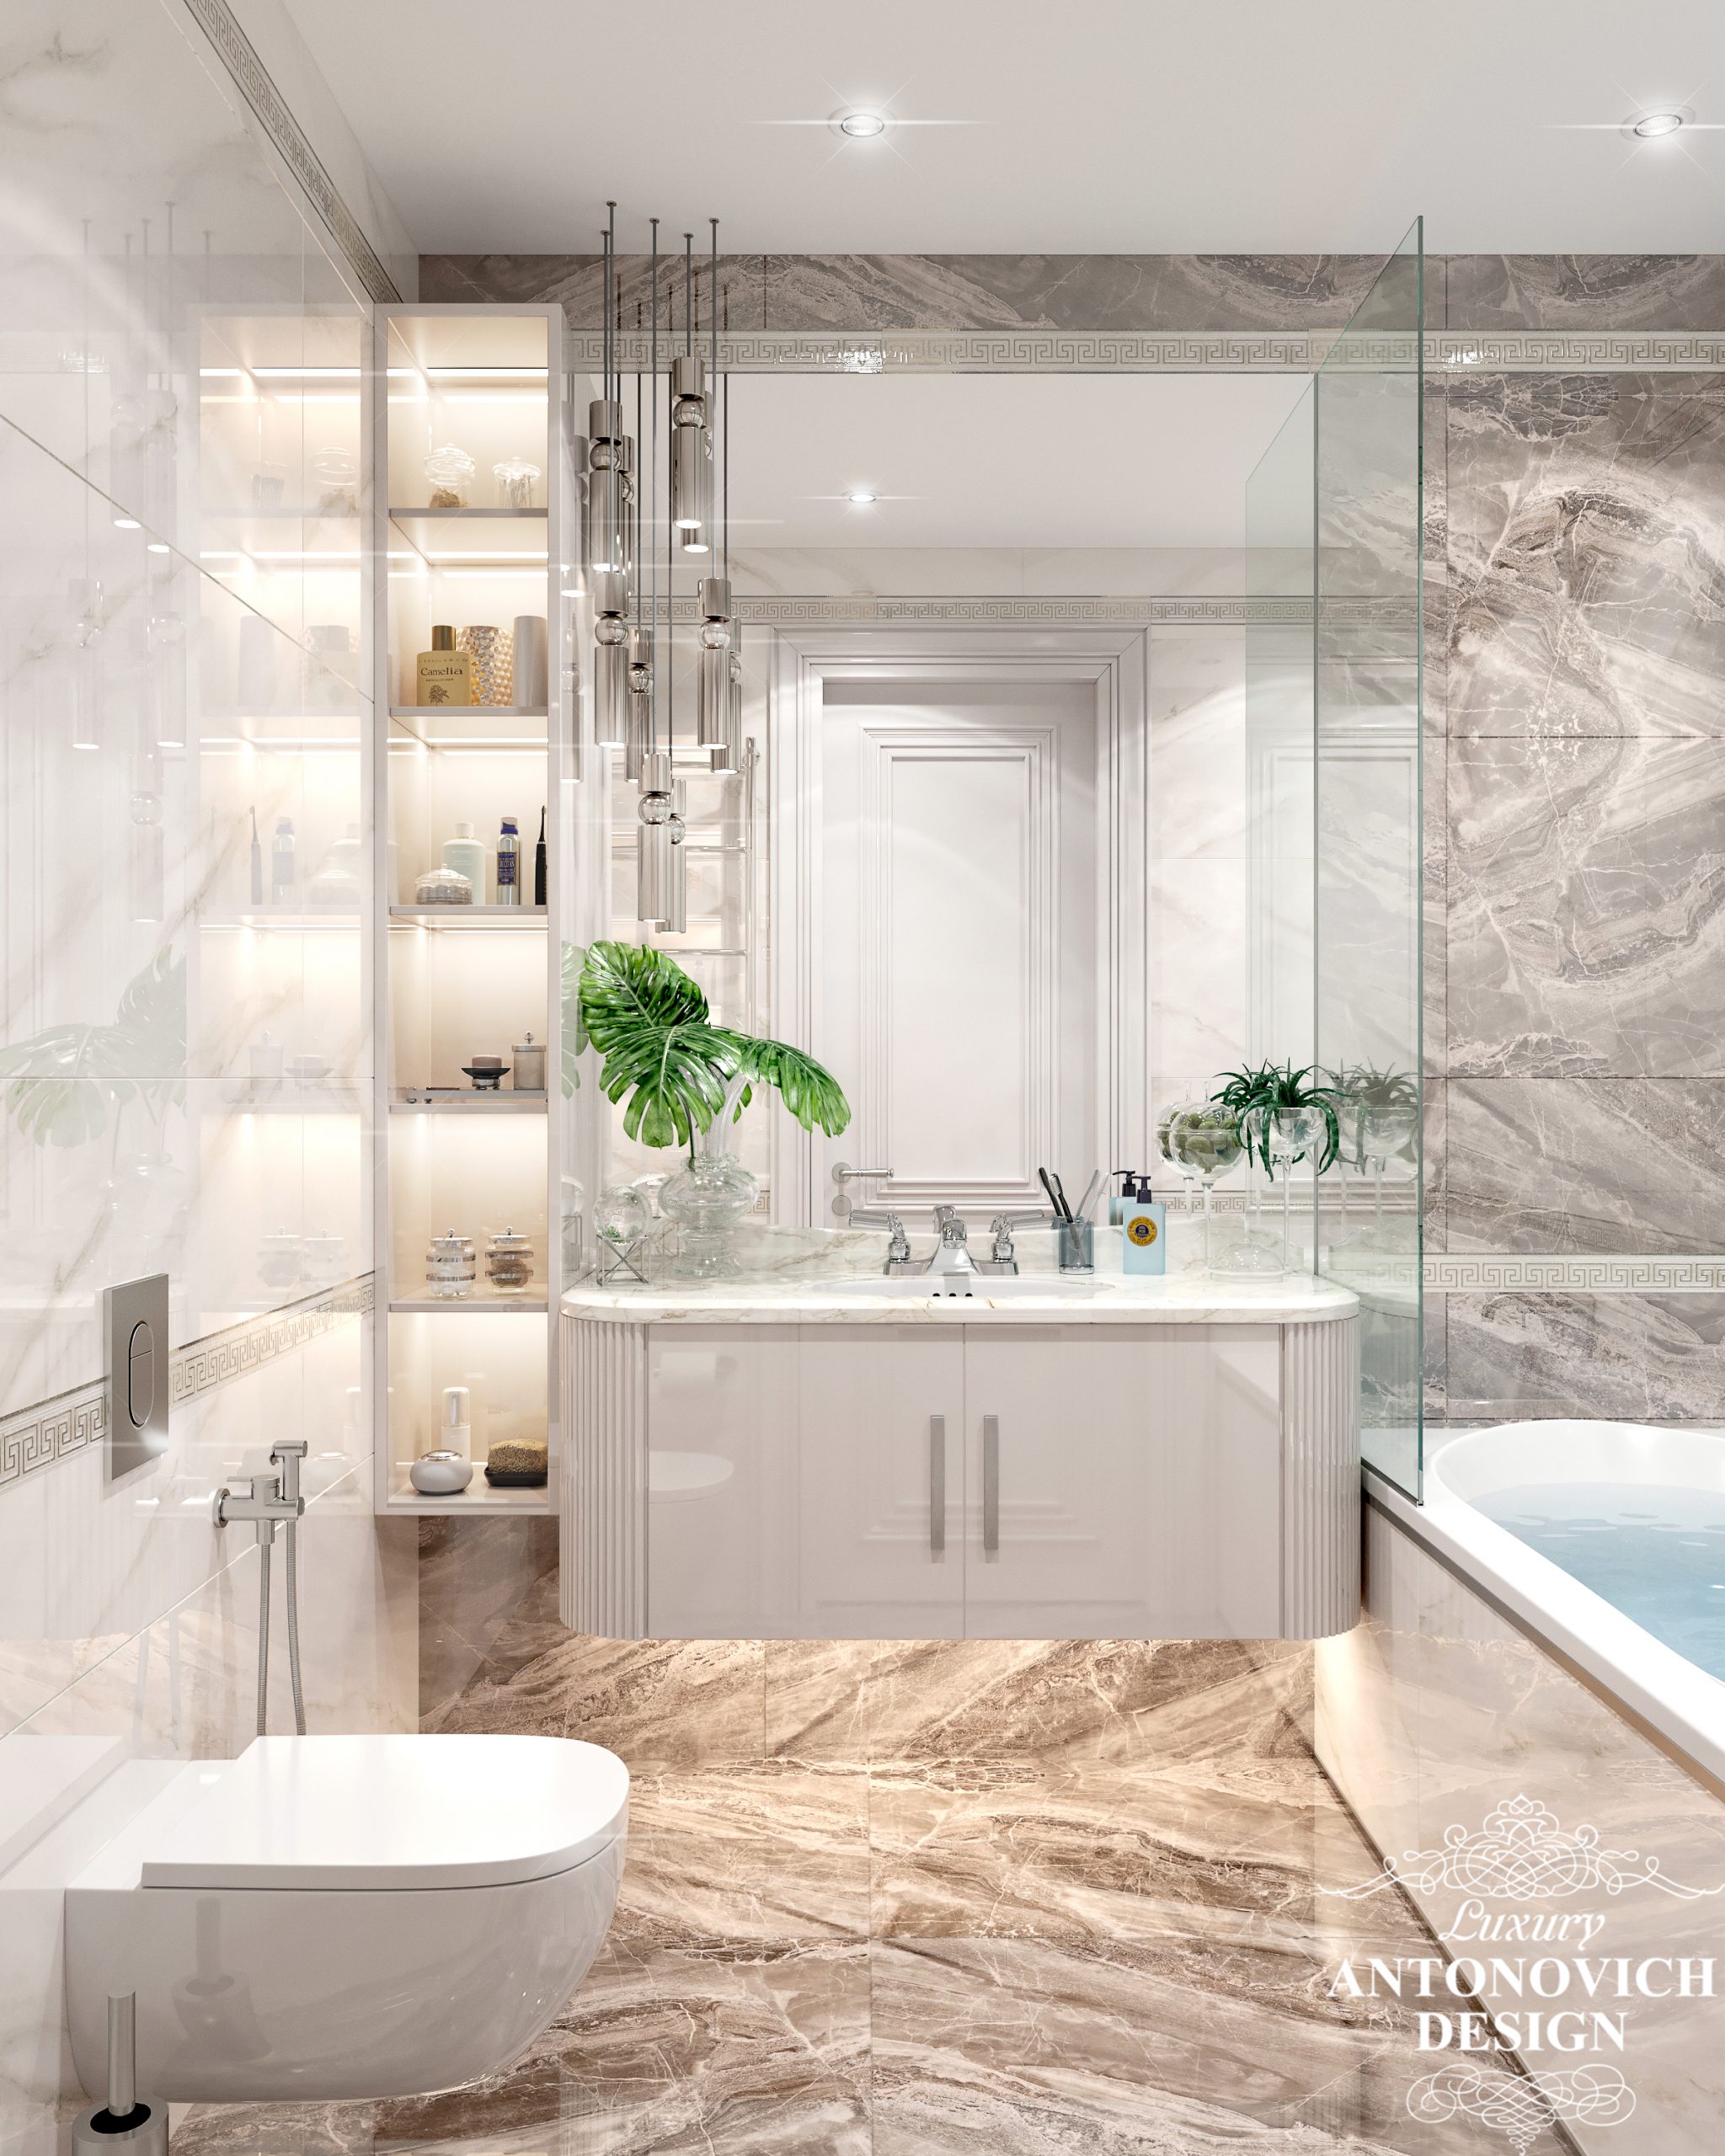 Італійський мармур і стильний сучасний декор в інтер'єрі ванної кімнати